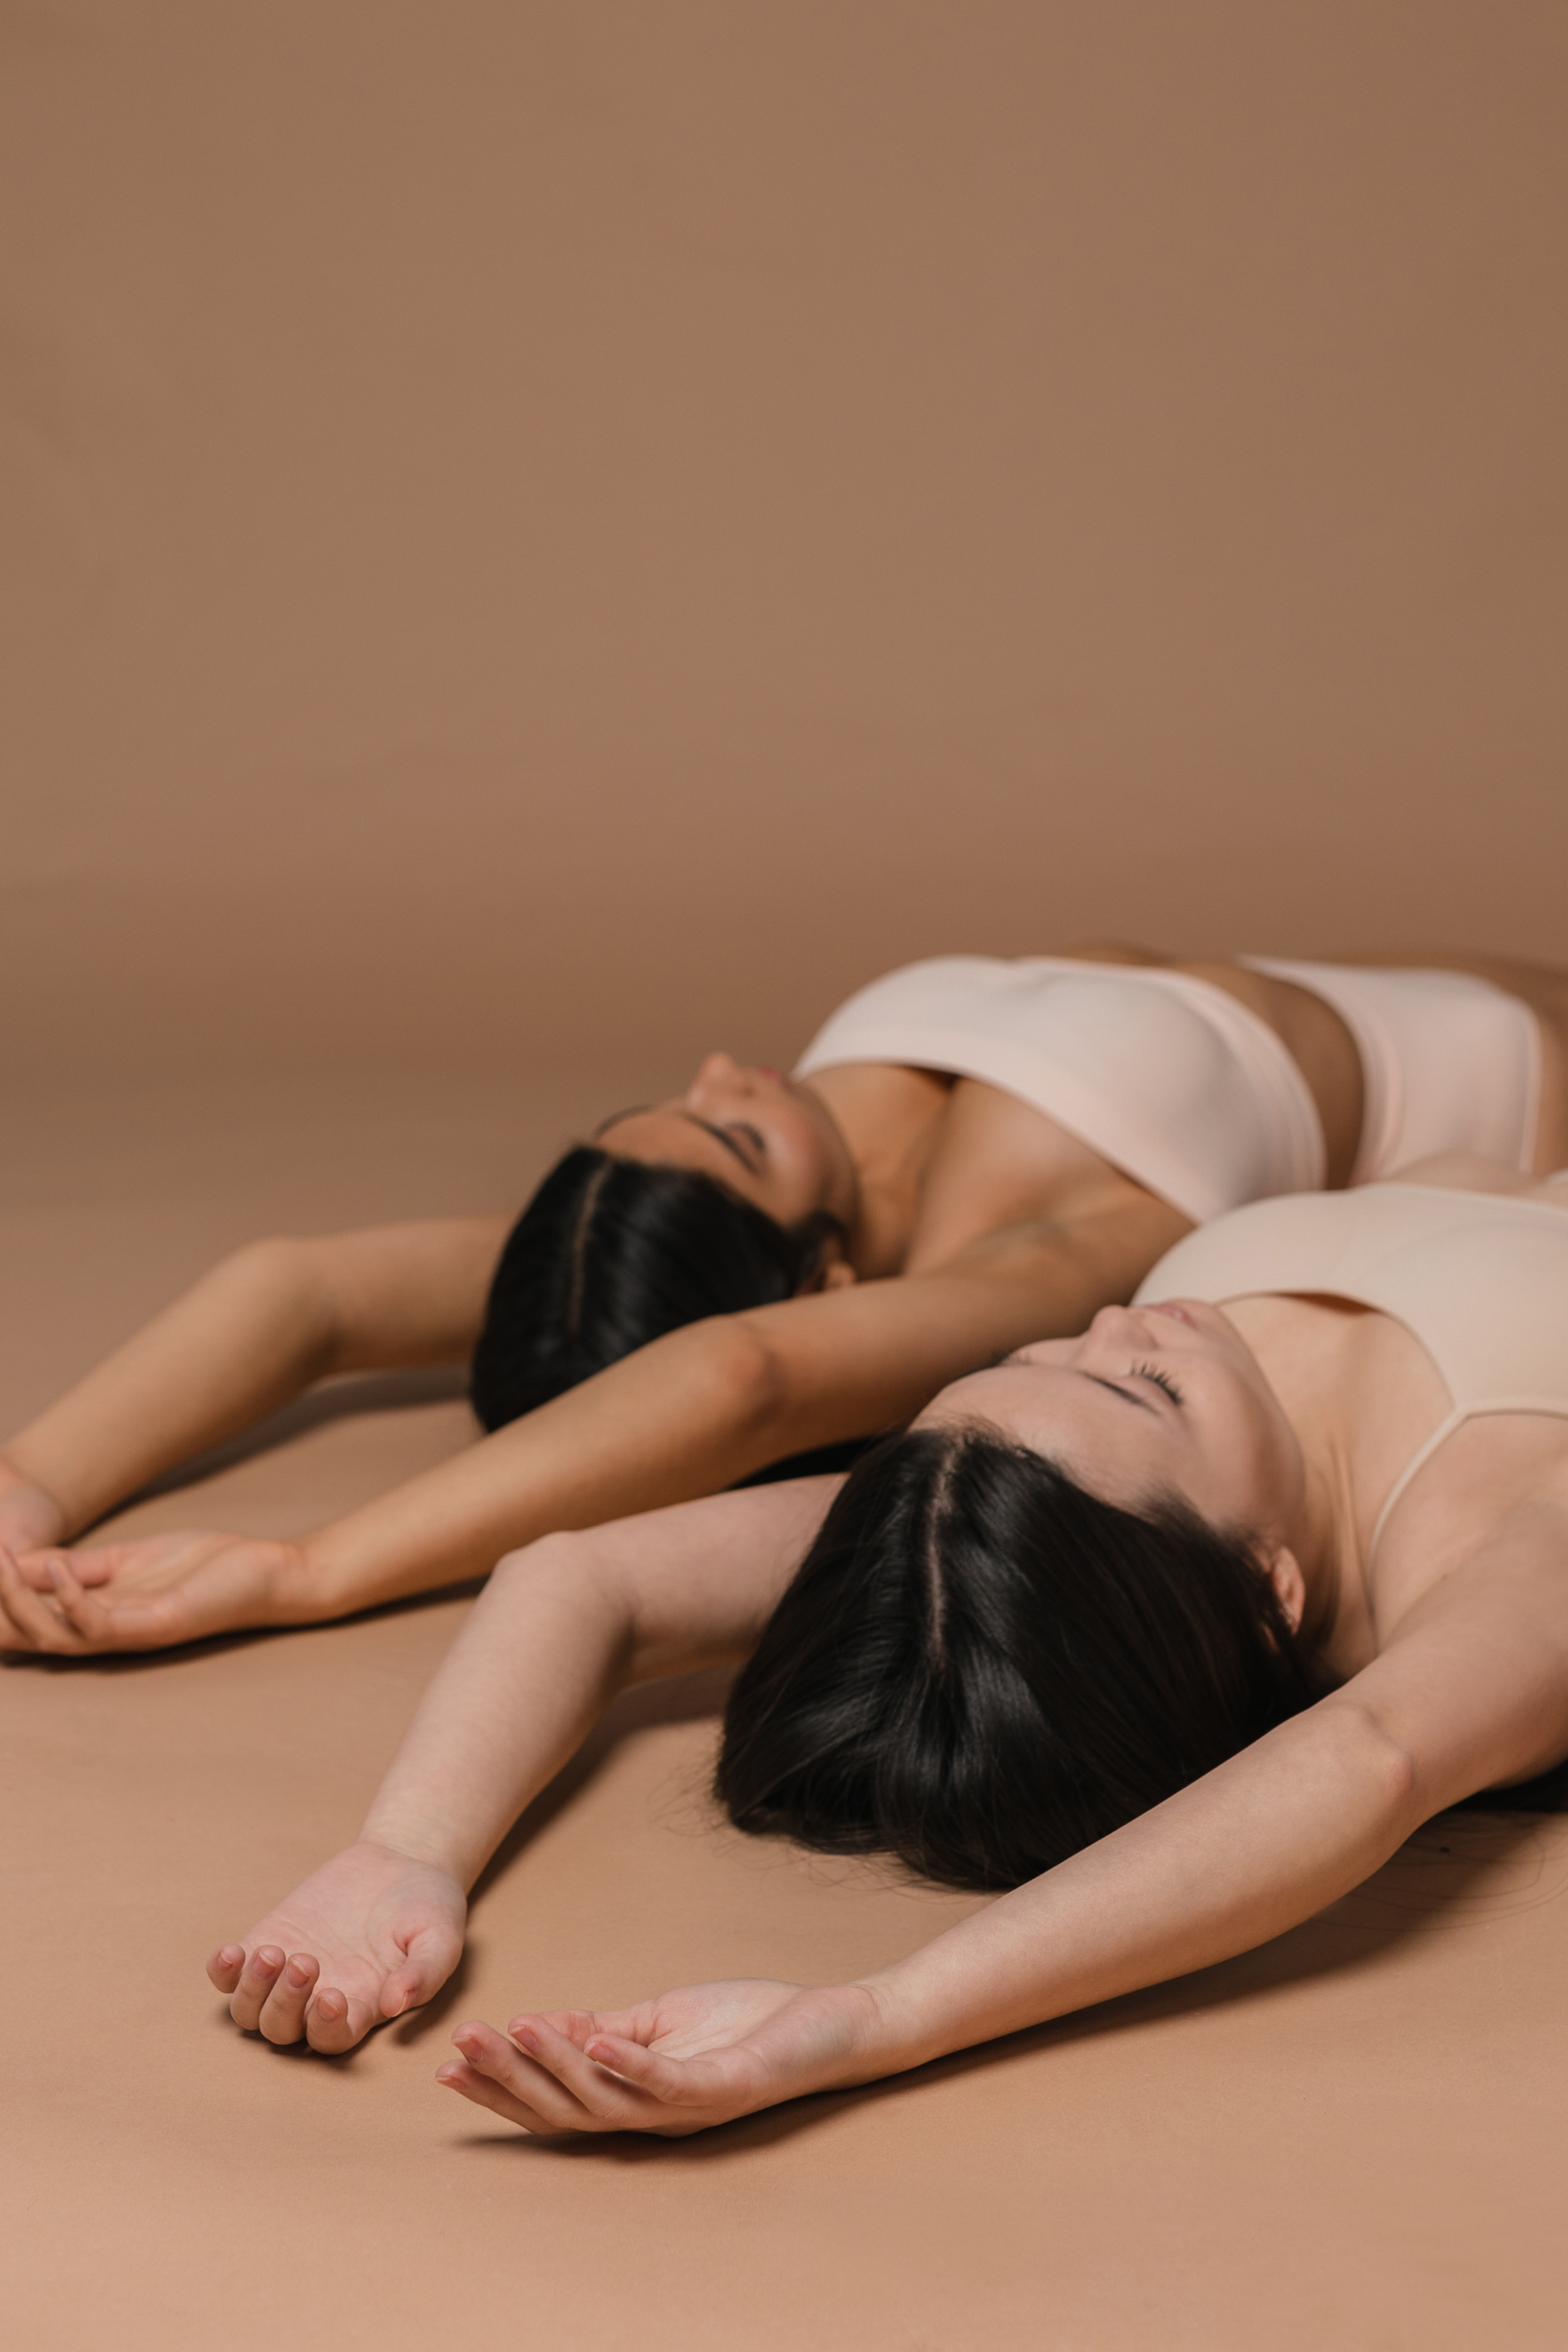 Women in Nude Underwear Lying on the Floor